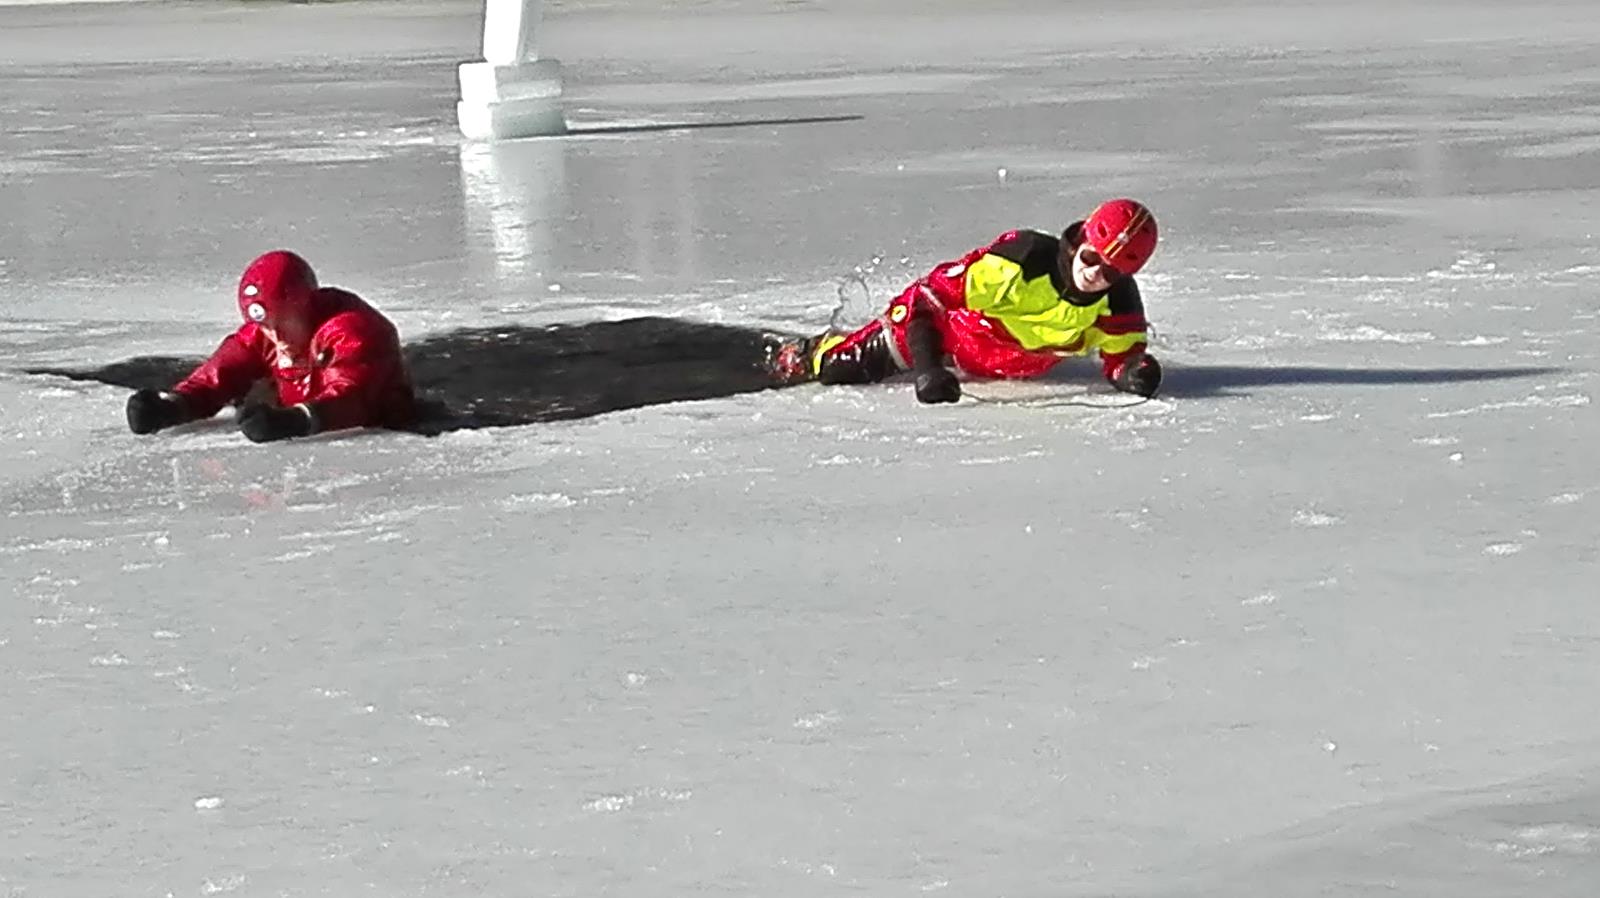 Záchrana osob probořených v ledu